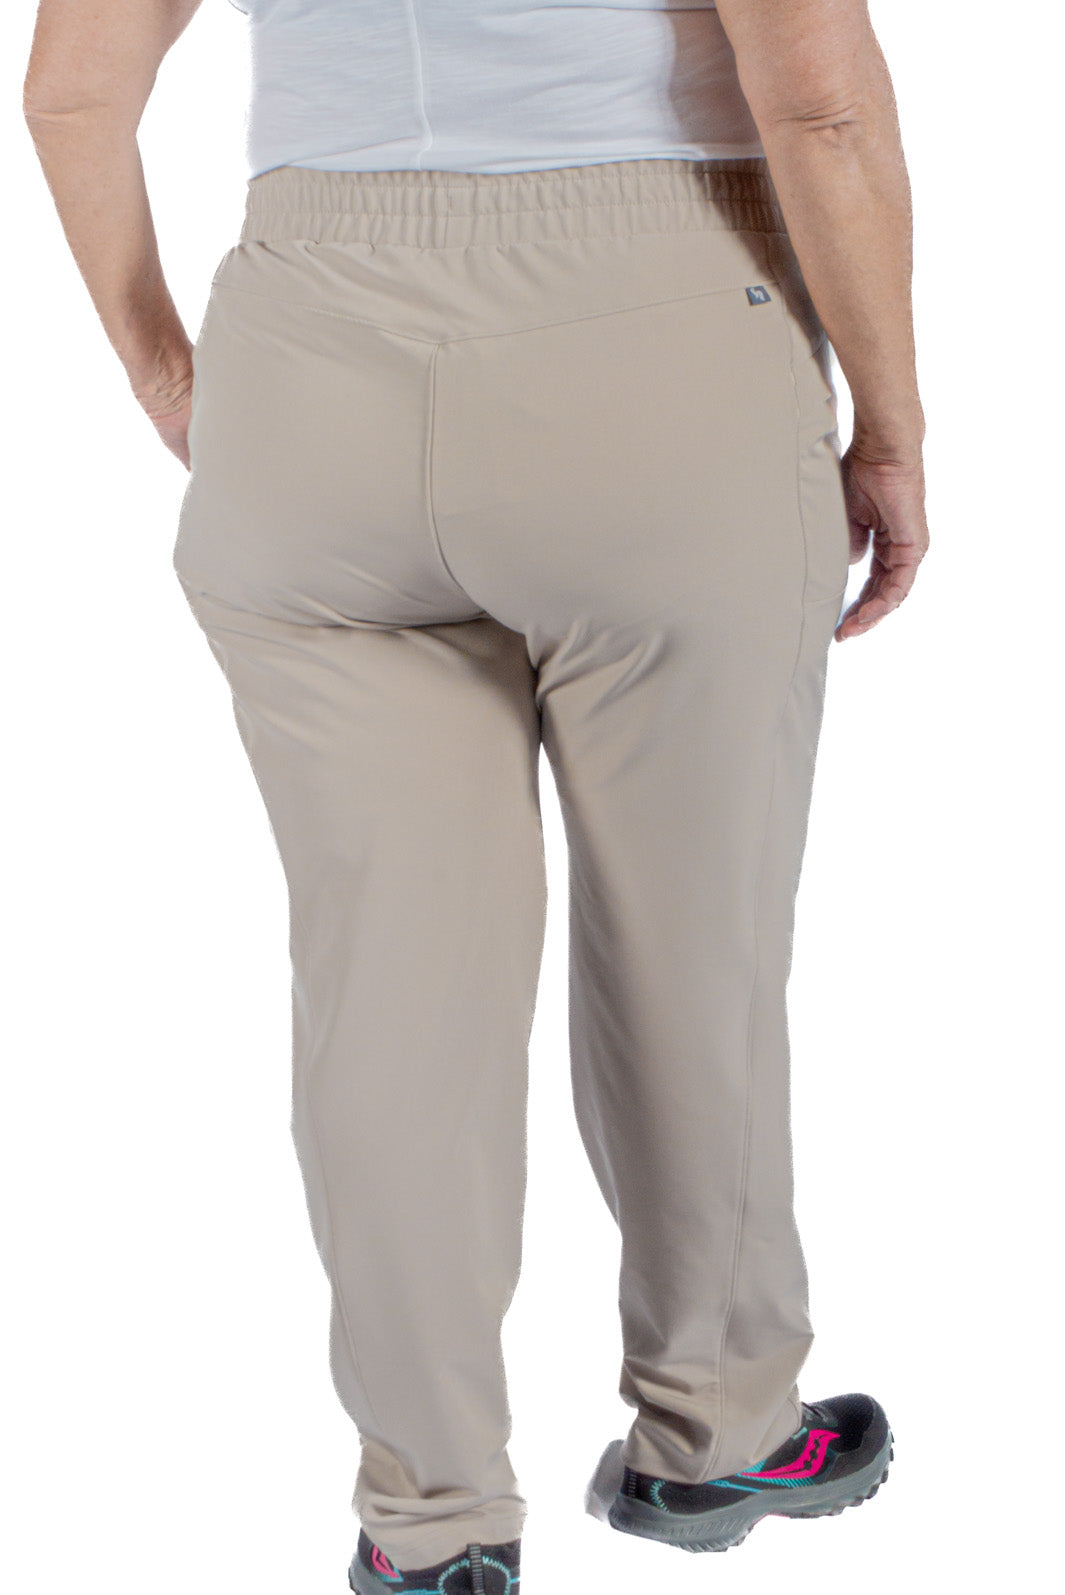 Pantalon De Randonnée Daphne Explorer II Taille Plus de Sportive Plus